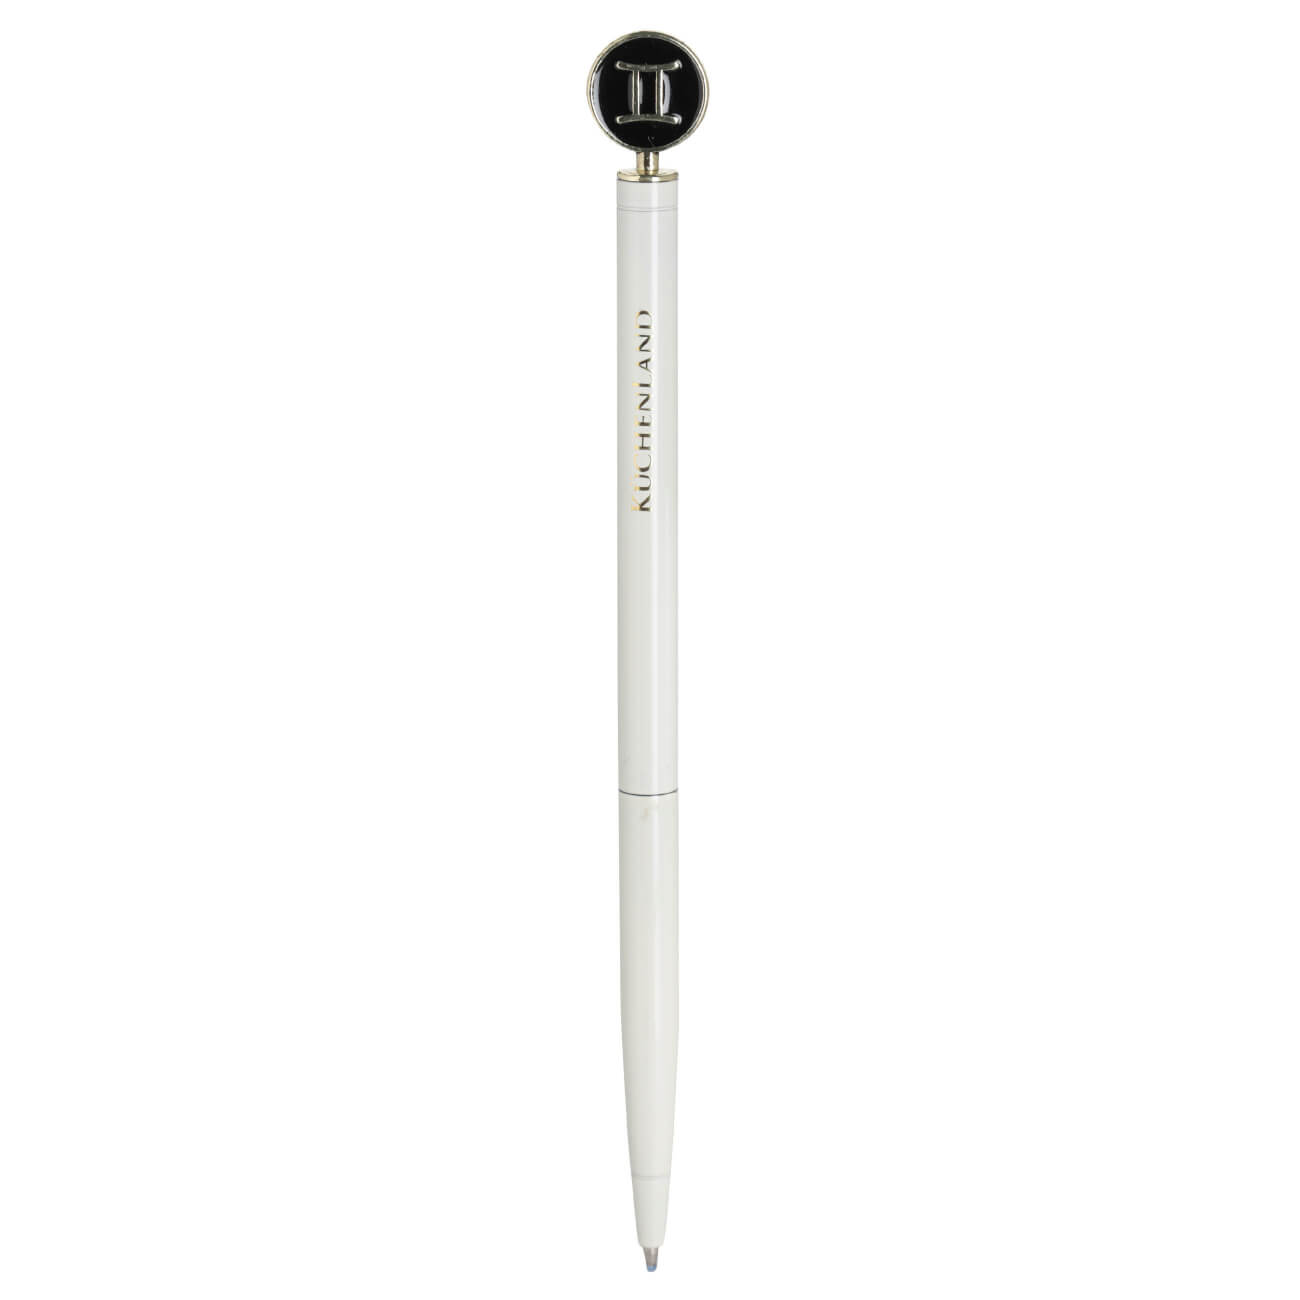 Ручка шариковая, 15 см, с фигуркой, сталь, молочно-золотистая, Близнецы, Zodiac classic ручка шариковая